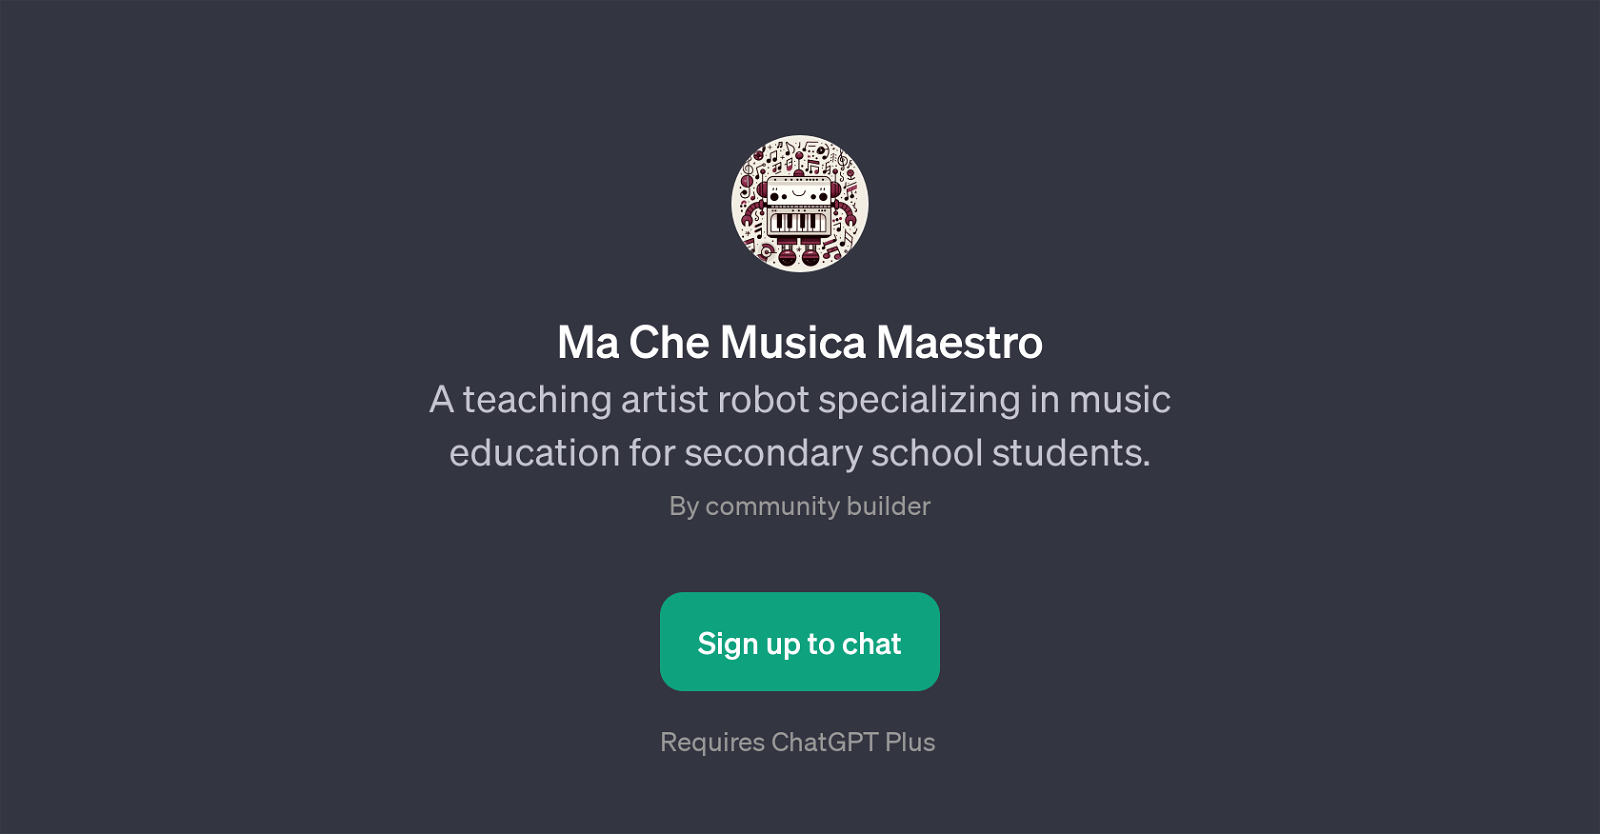 Ma Che Musica Maestro website